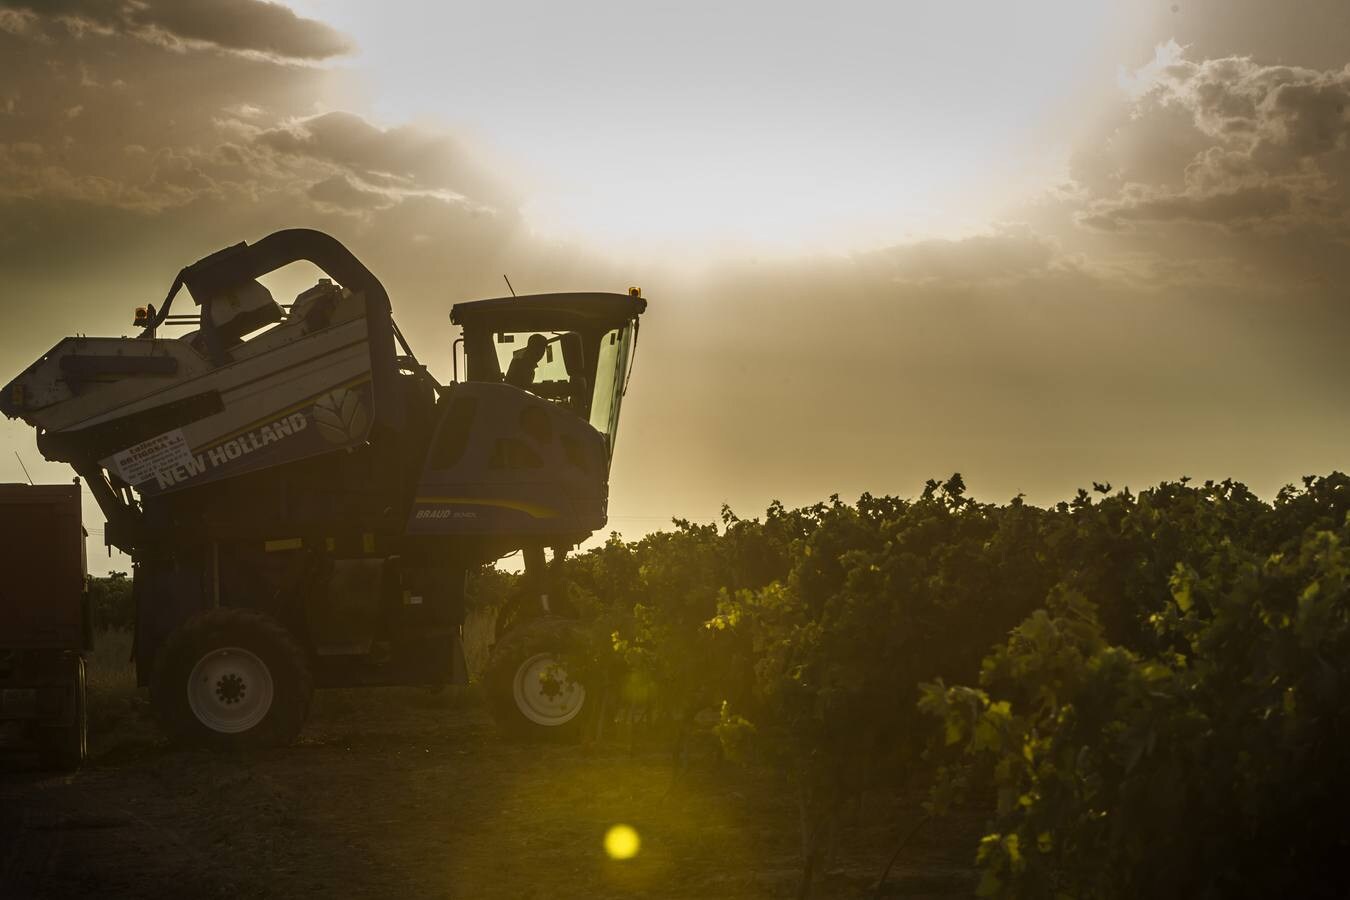 El Consejo cree que la cosecha «cumplirá expectativas» de producción y empieza a exigir descargas en las viñas más productivas | La Rioja Alta fue la zona más castigada por la helada en el 2017 y ha sido la más afectada por el mildiu este año